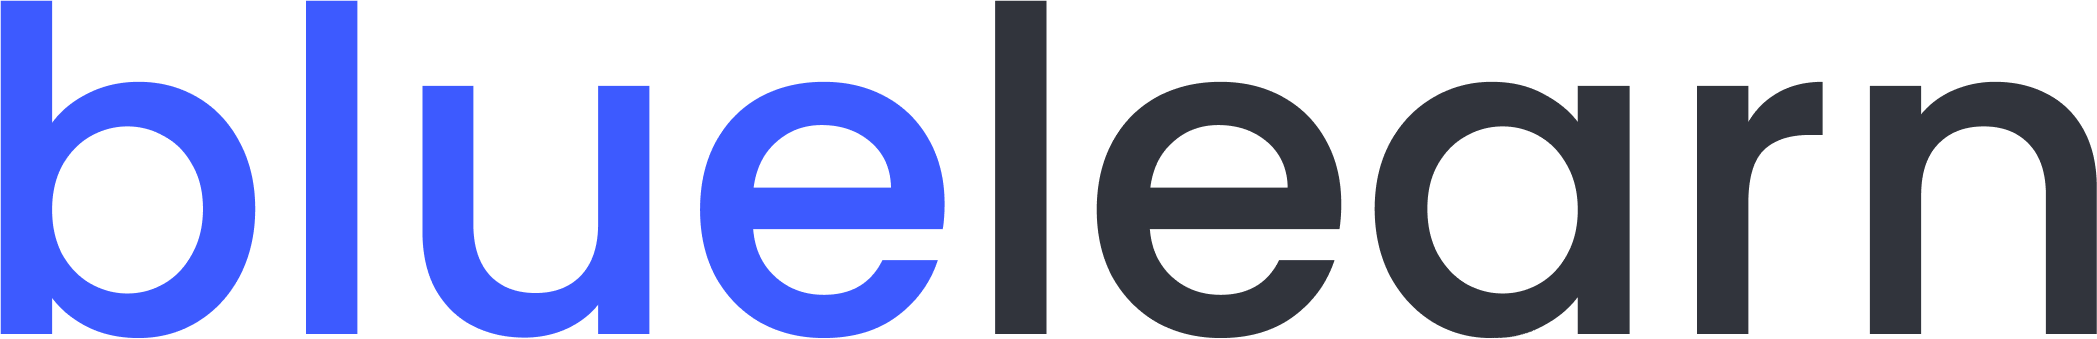 bl logo